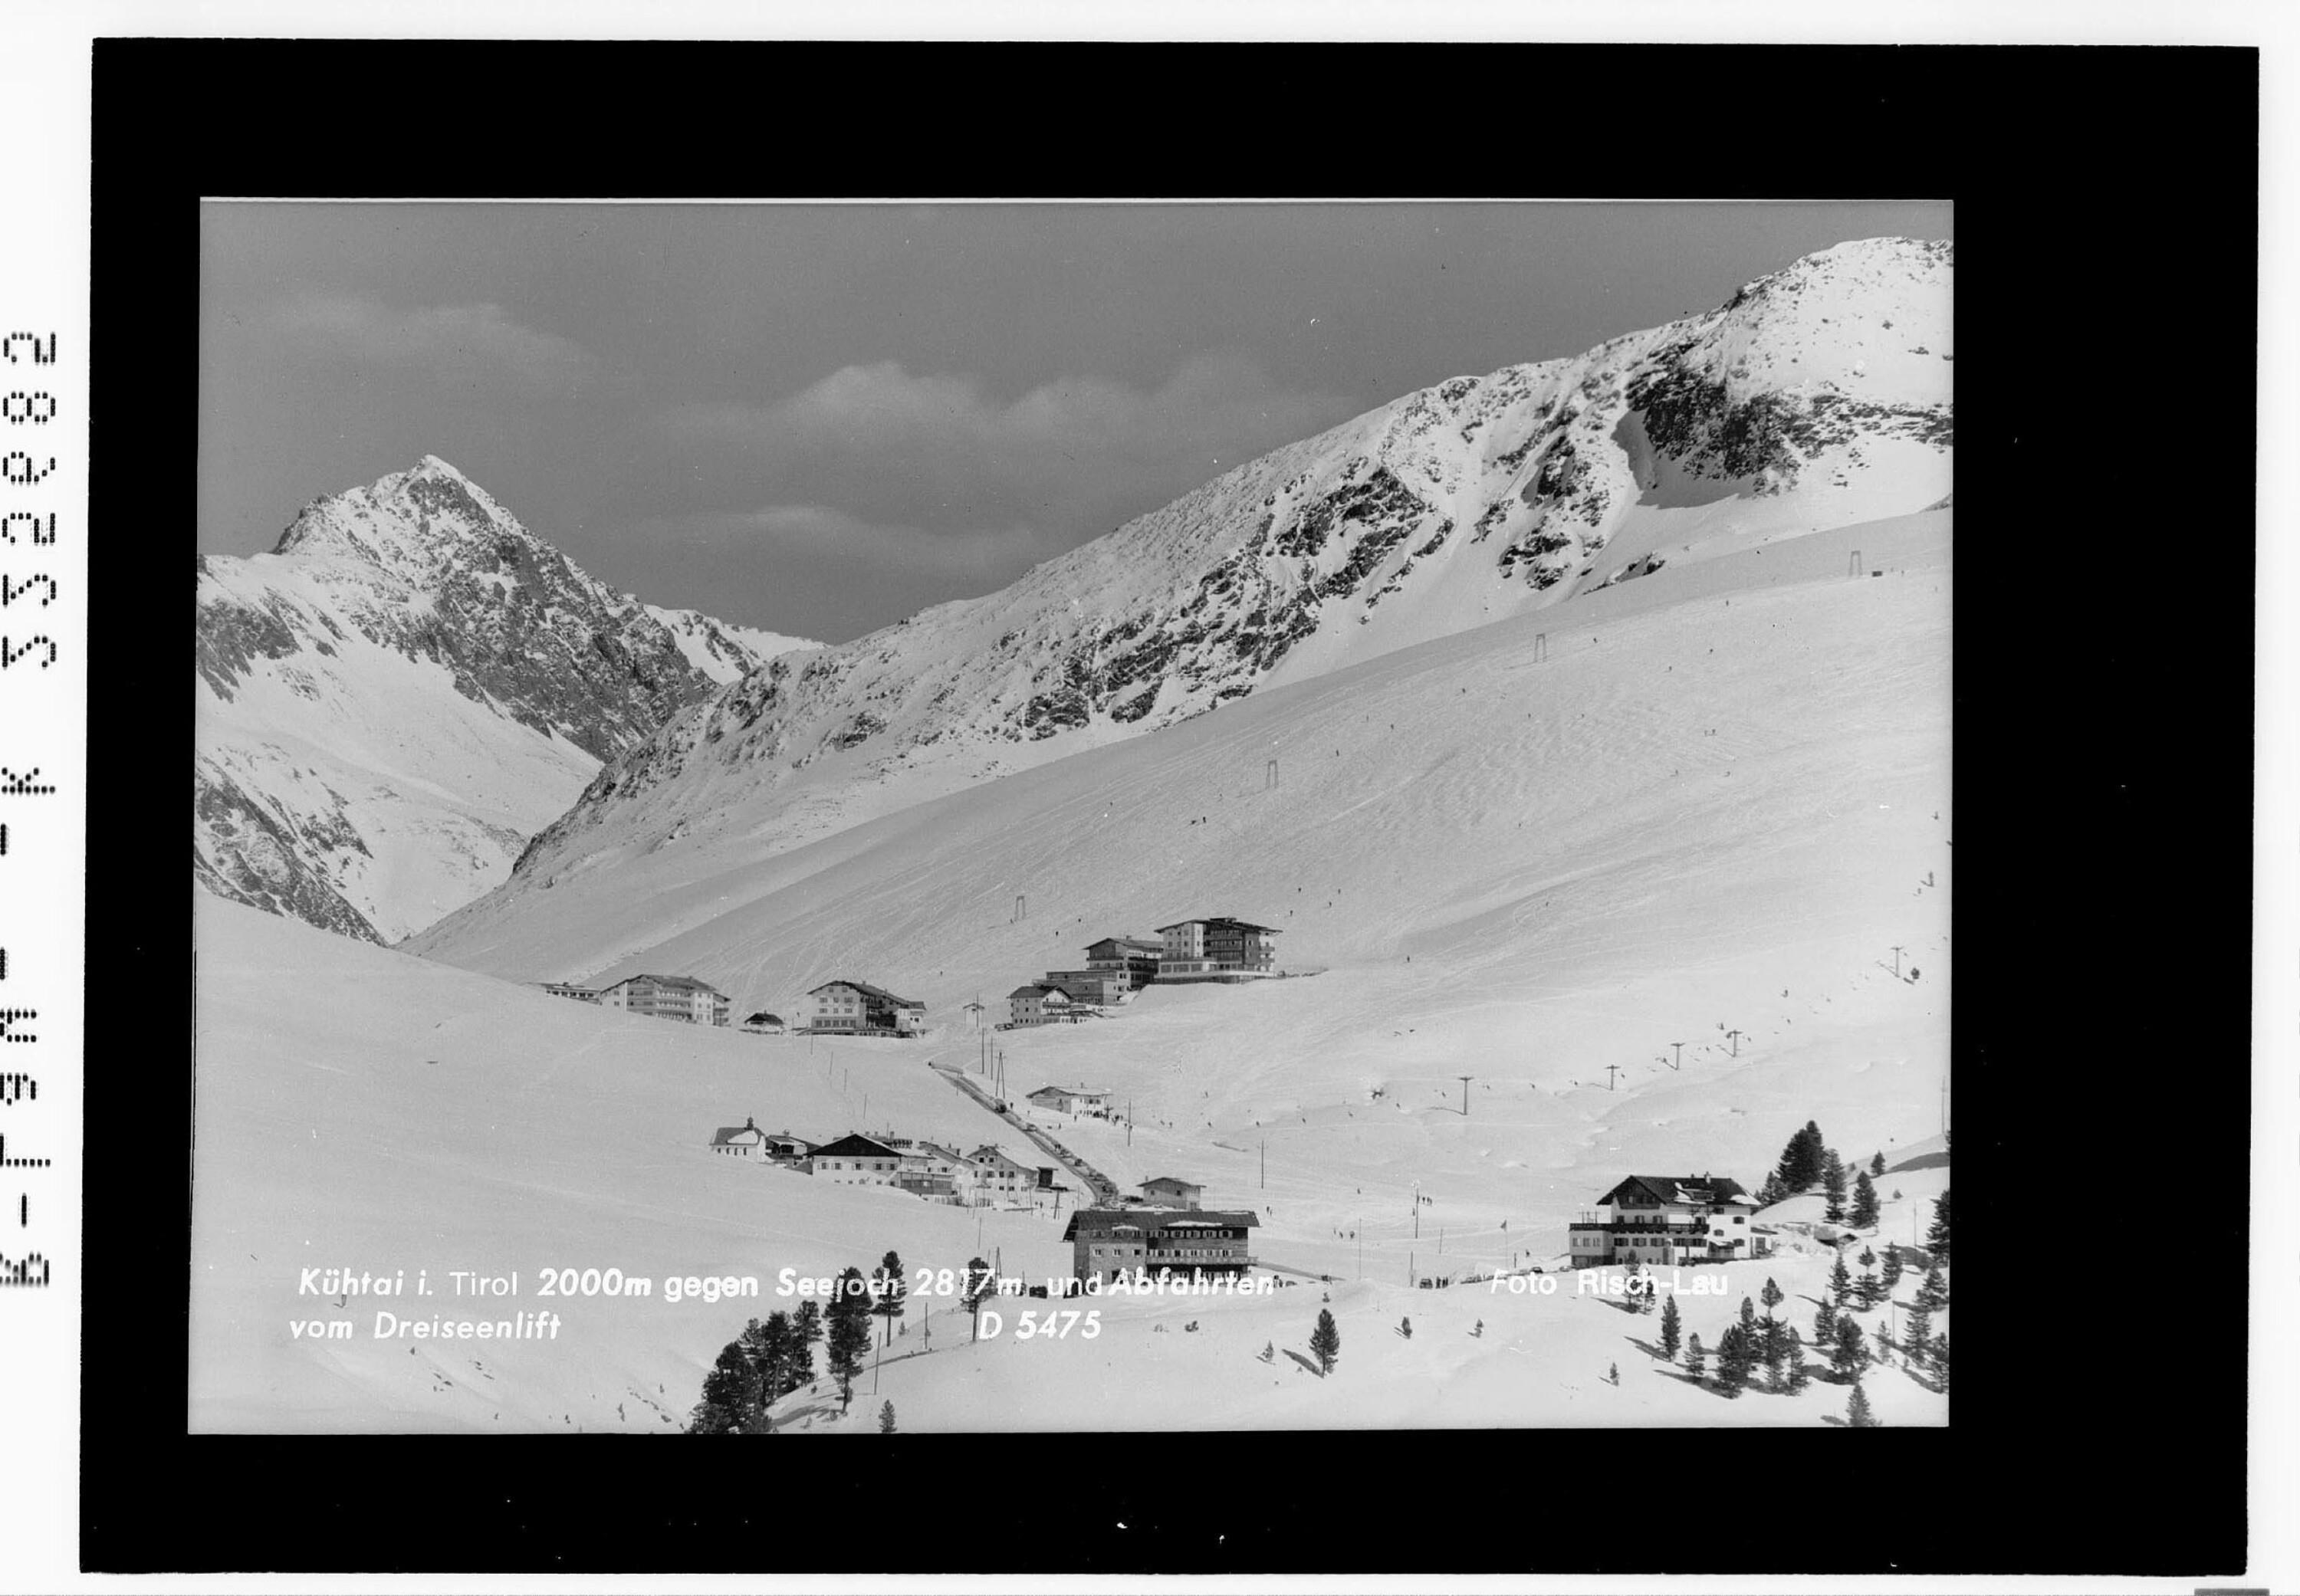 Kühtai in Tirol 2000 m gegen Seejoch 2817 m und Abfahrten vom Dreiseenlift></div>


    <hr>
    <div class=